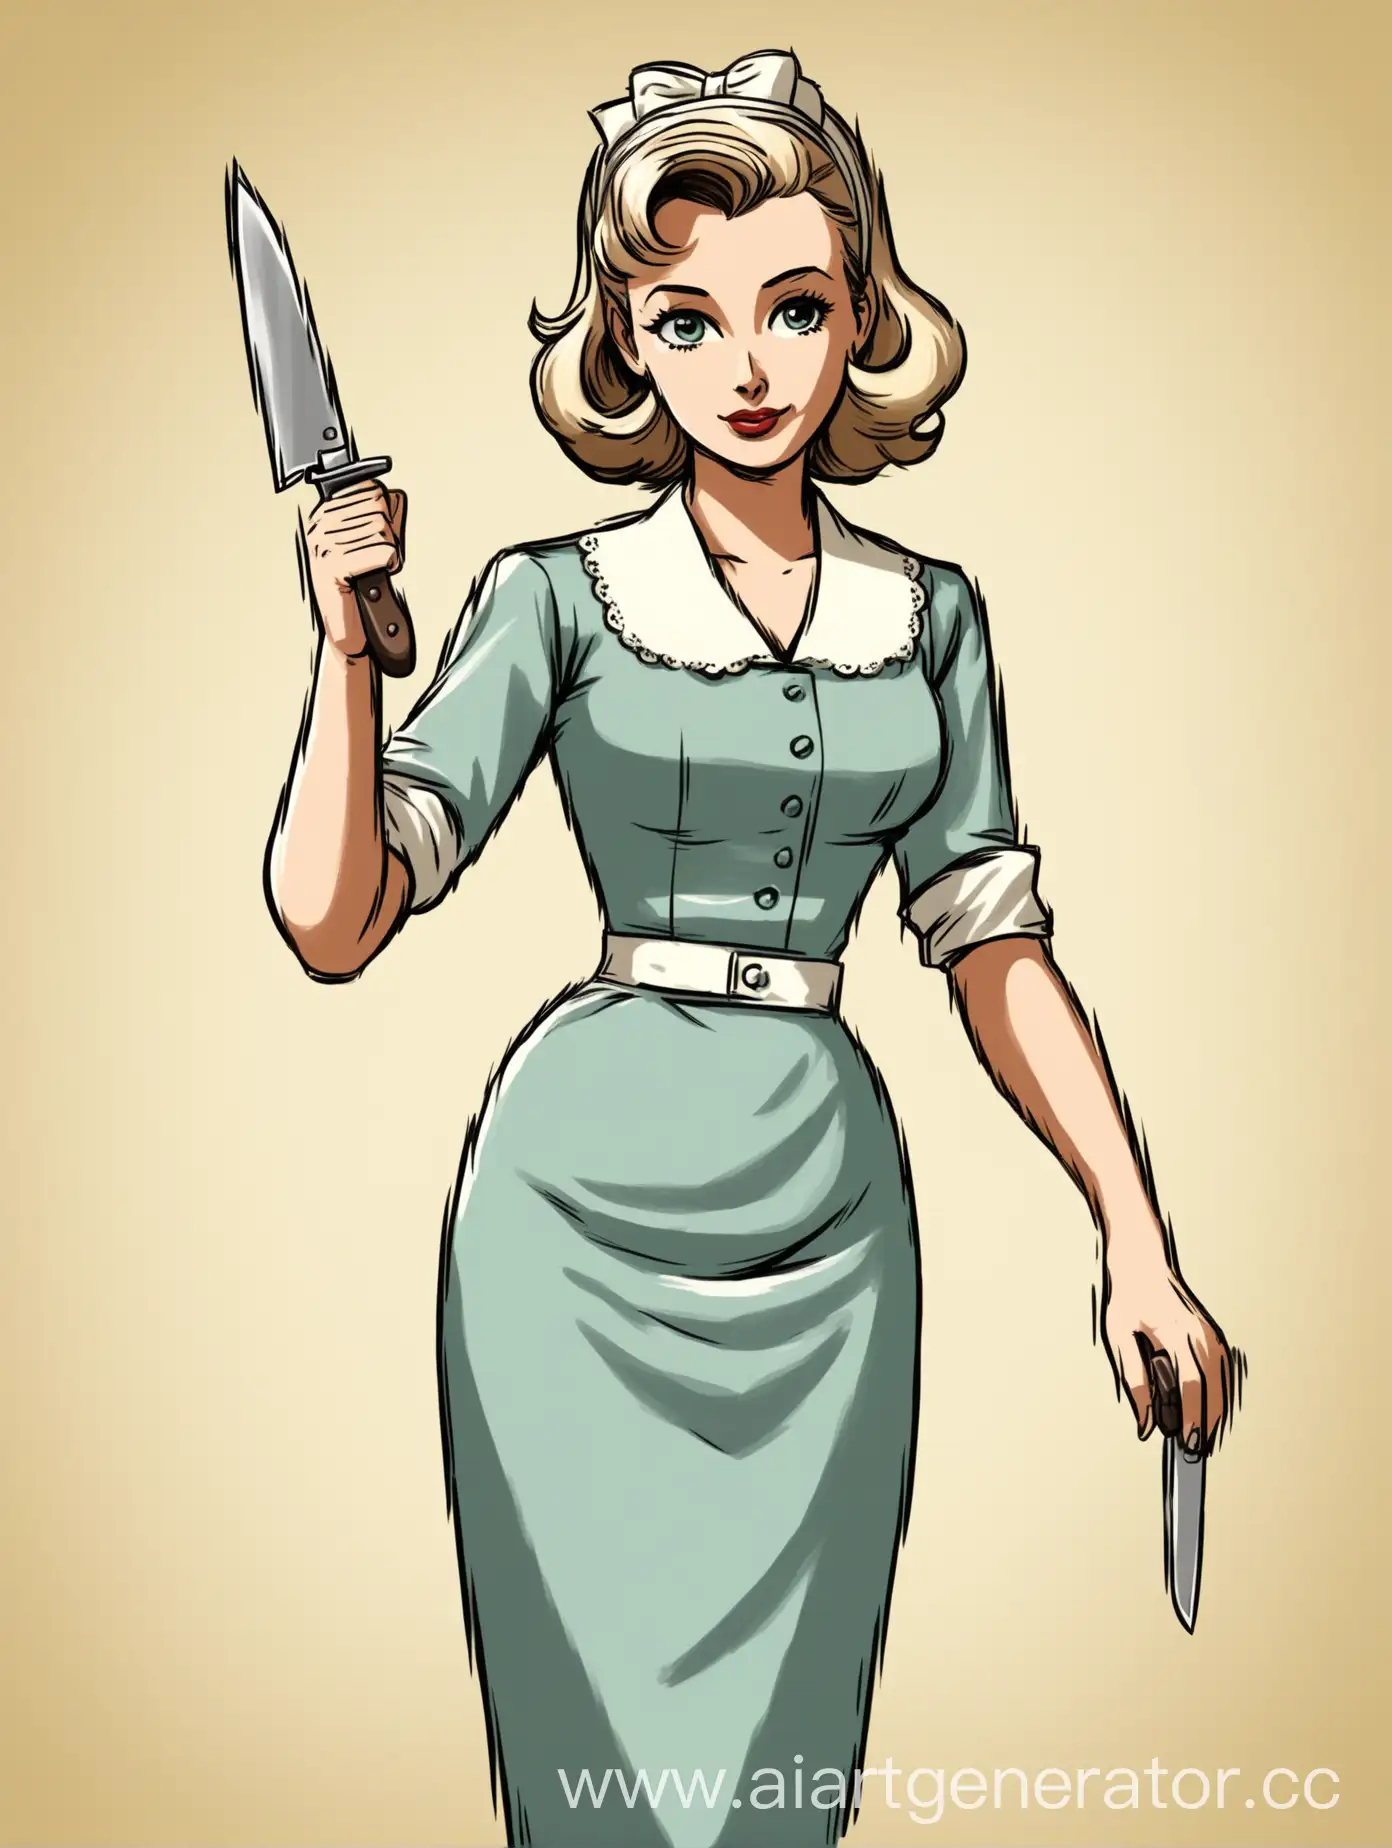 нарисуй домохозяйку со светлыми волосами которая в руке держит нож одета в наряд из 50 годов


